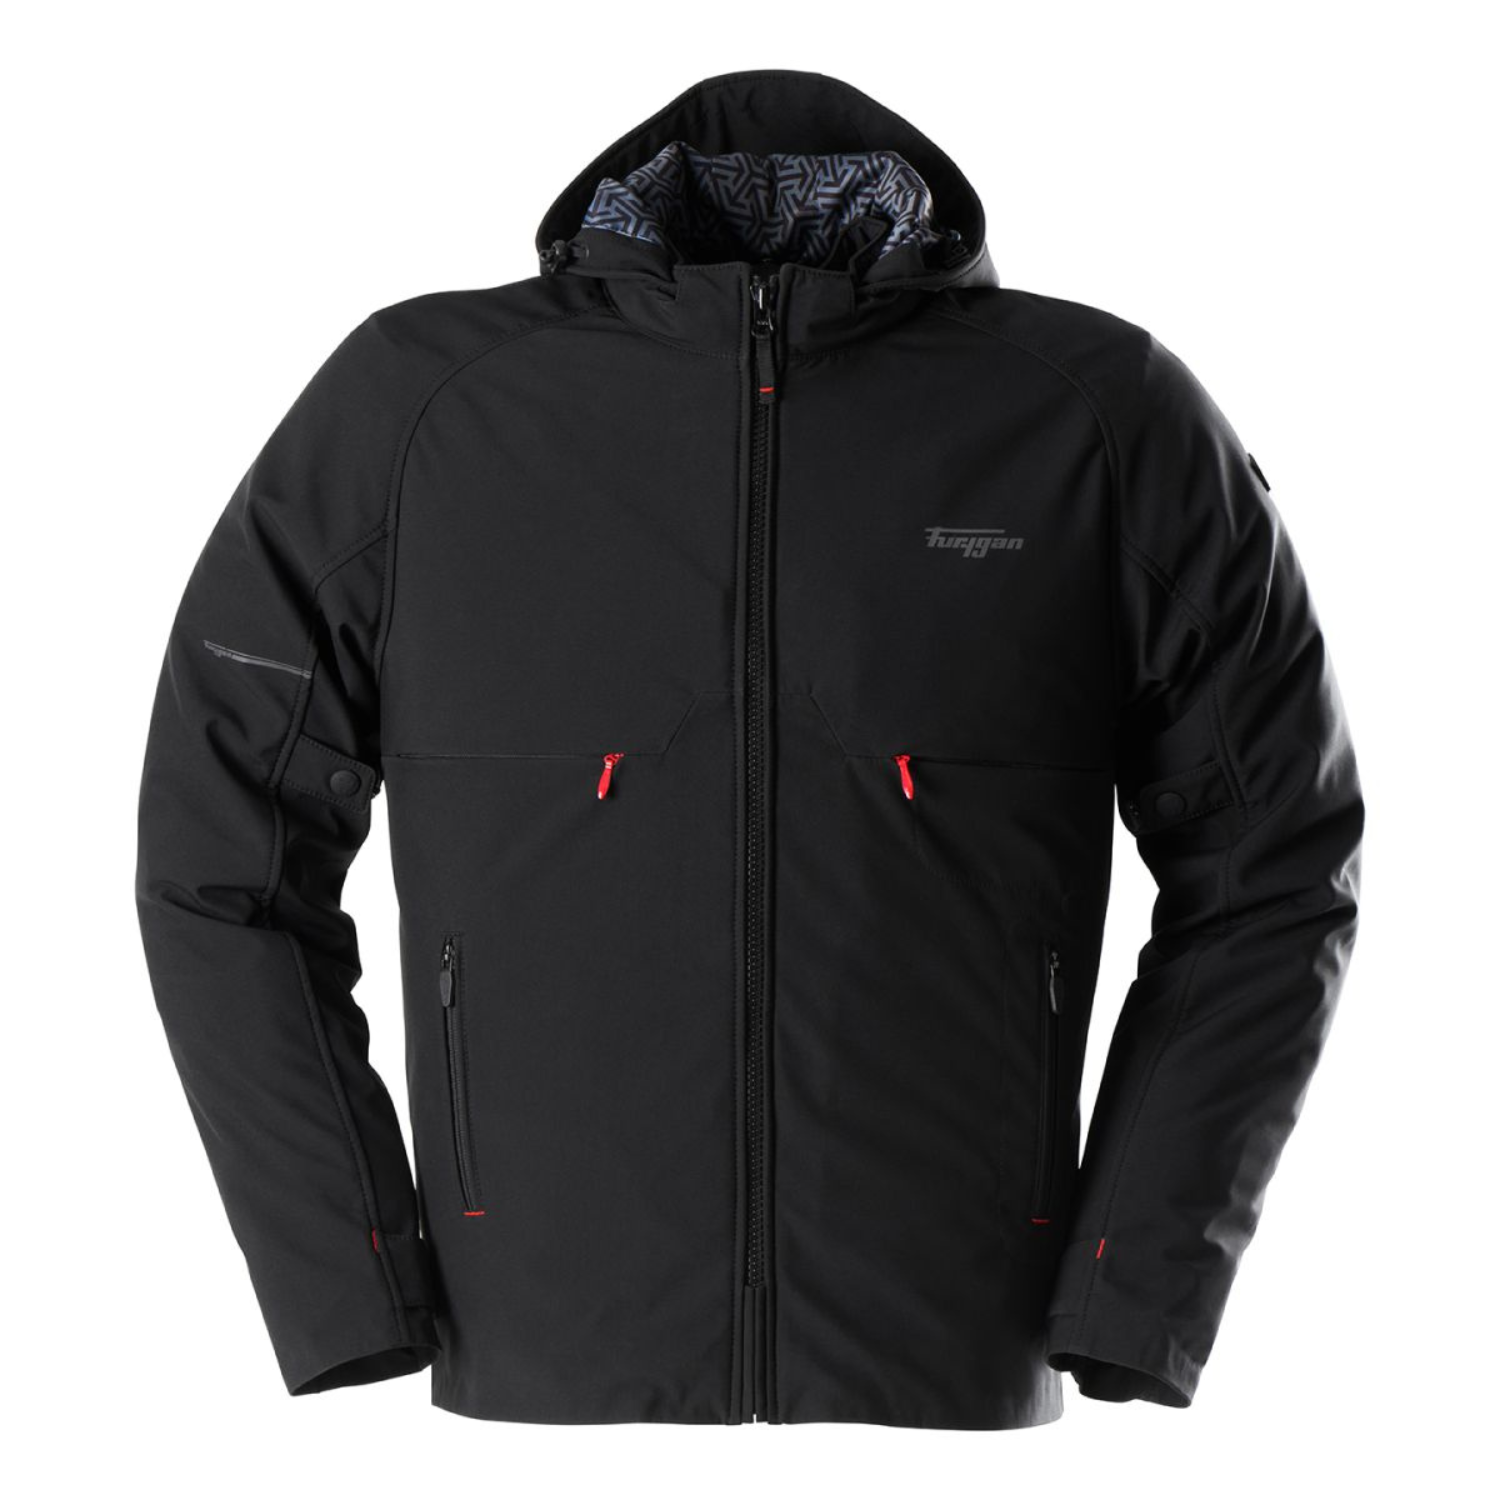 Furygan Addax Jacket Black Size 3XL